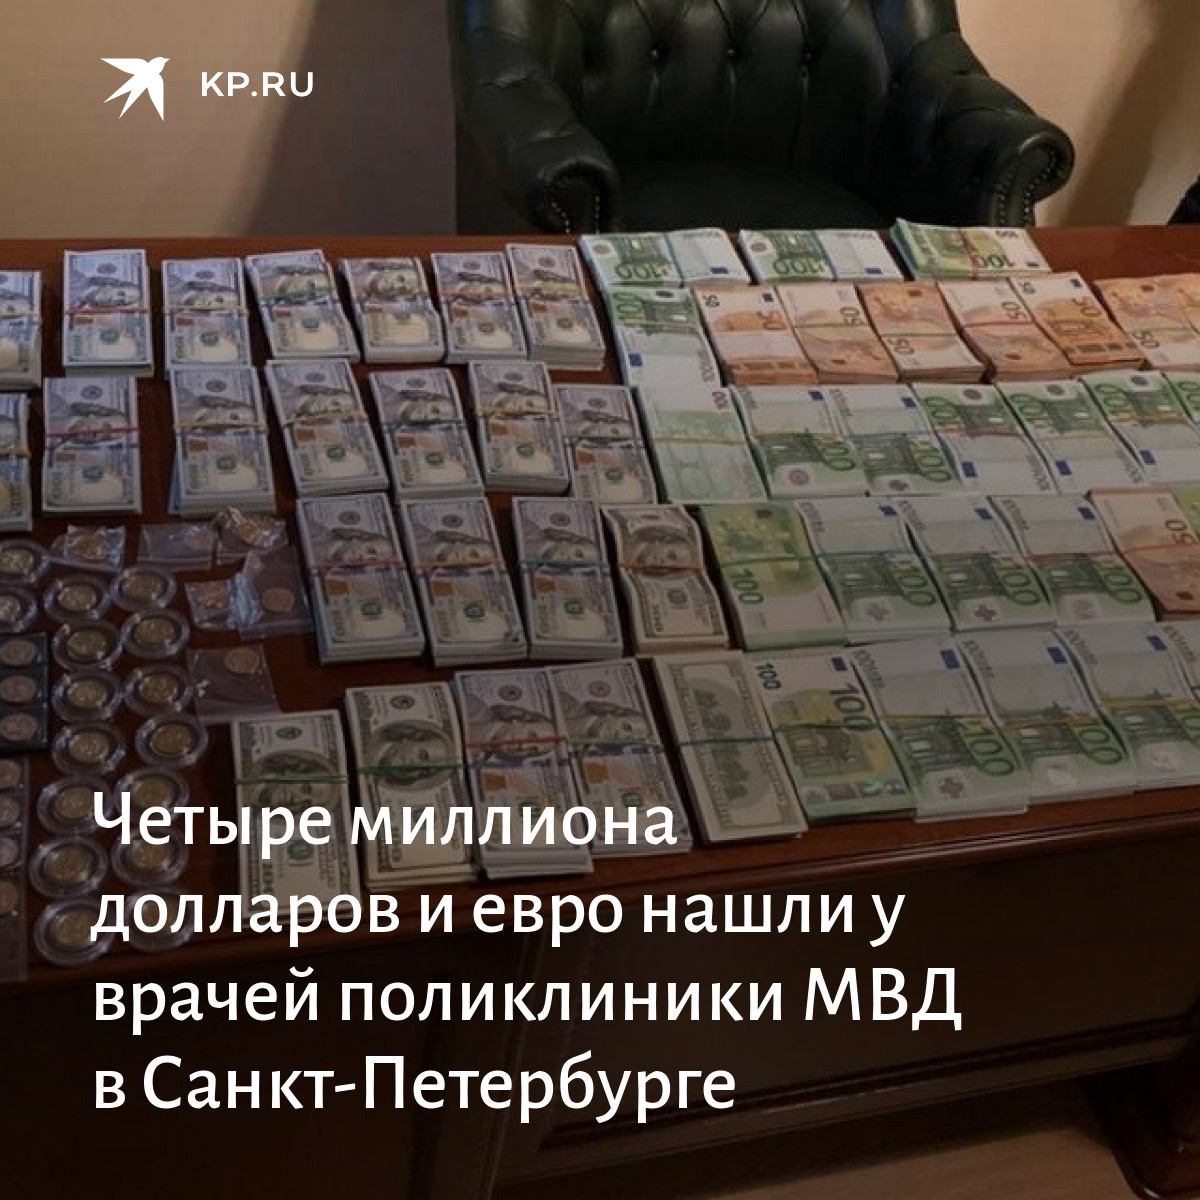 Возьму миллион рублей безвозмездно. Кредит на 1000000 миллионов долларов. 1000000 Рублей на открытие бизнеса. Кредит 1000000 рублей наличными. Как получить миллион.